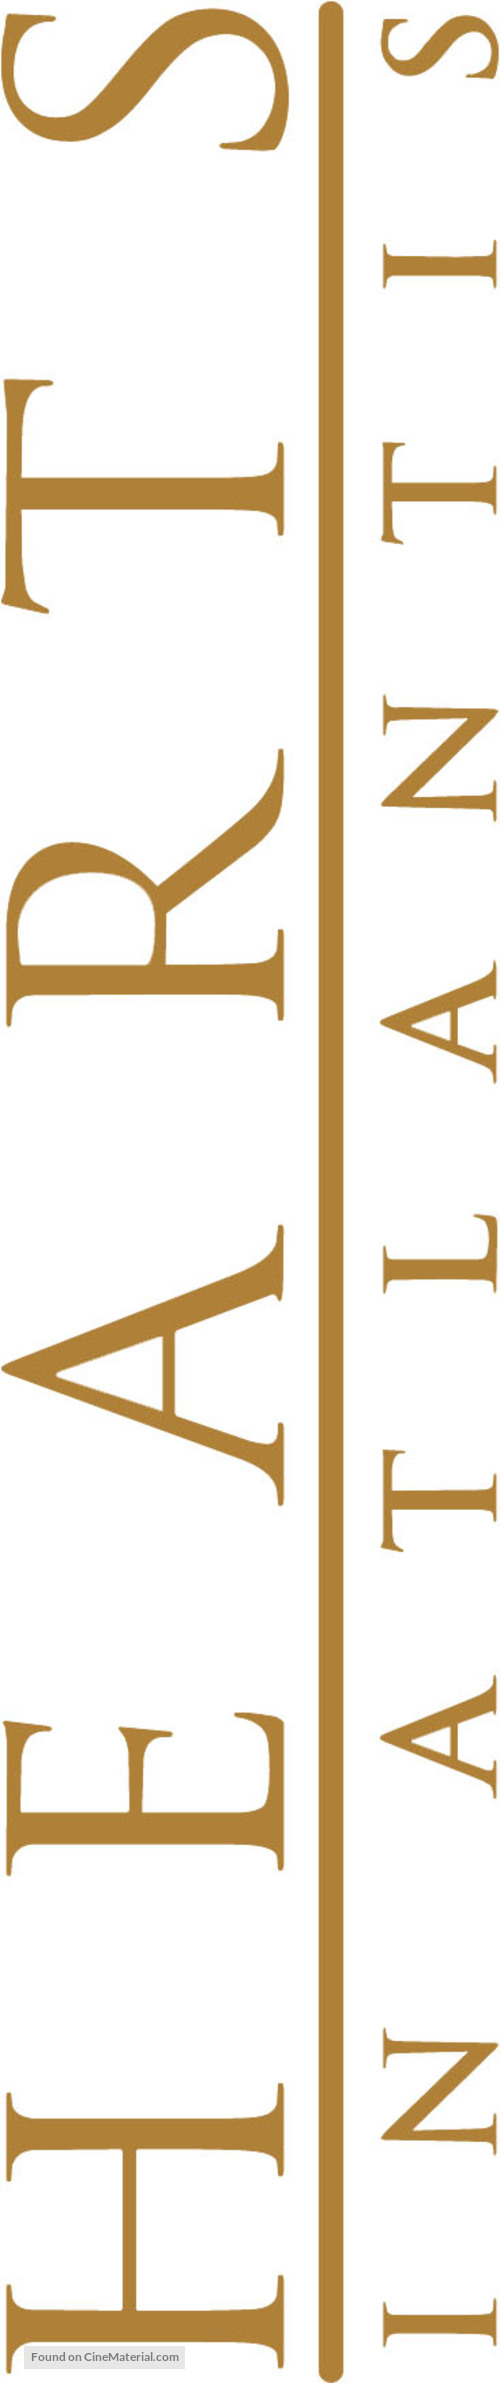 Hearts in Atlantis - Logo